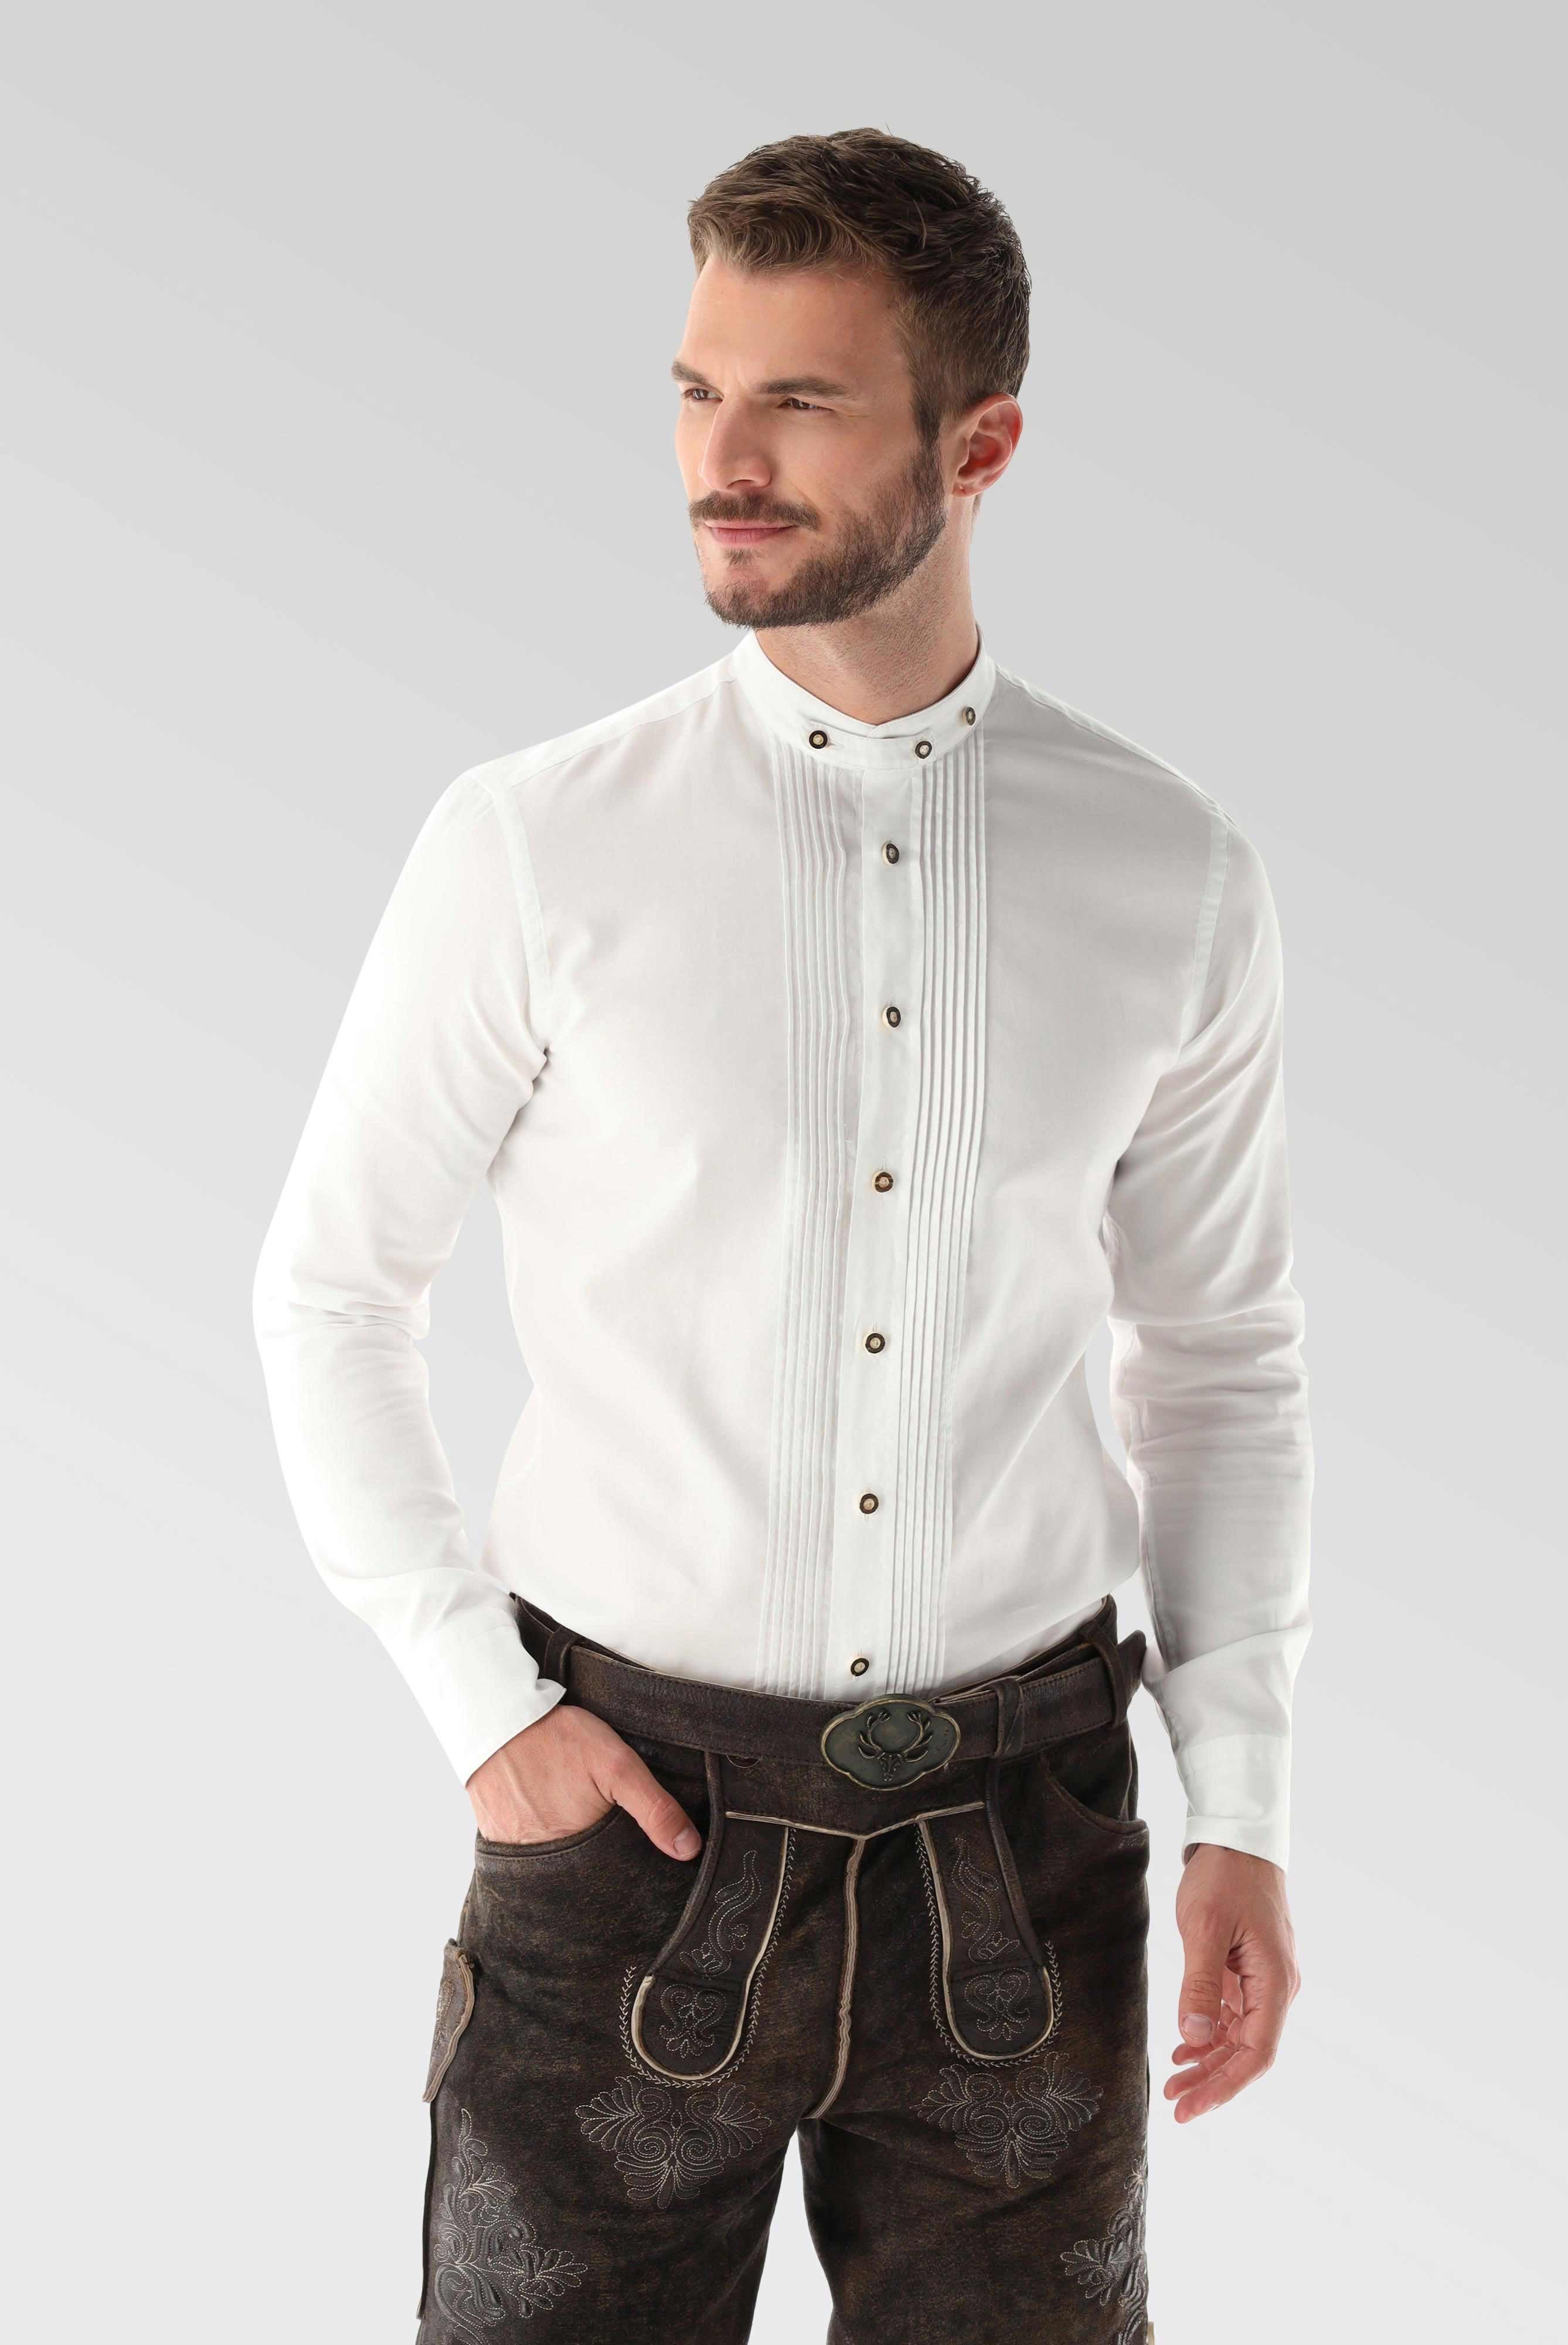 Oxford Trachtenhemd mit Plissee-Einsatz Tailor Fit